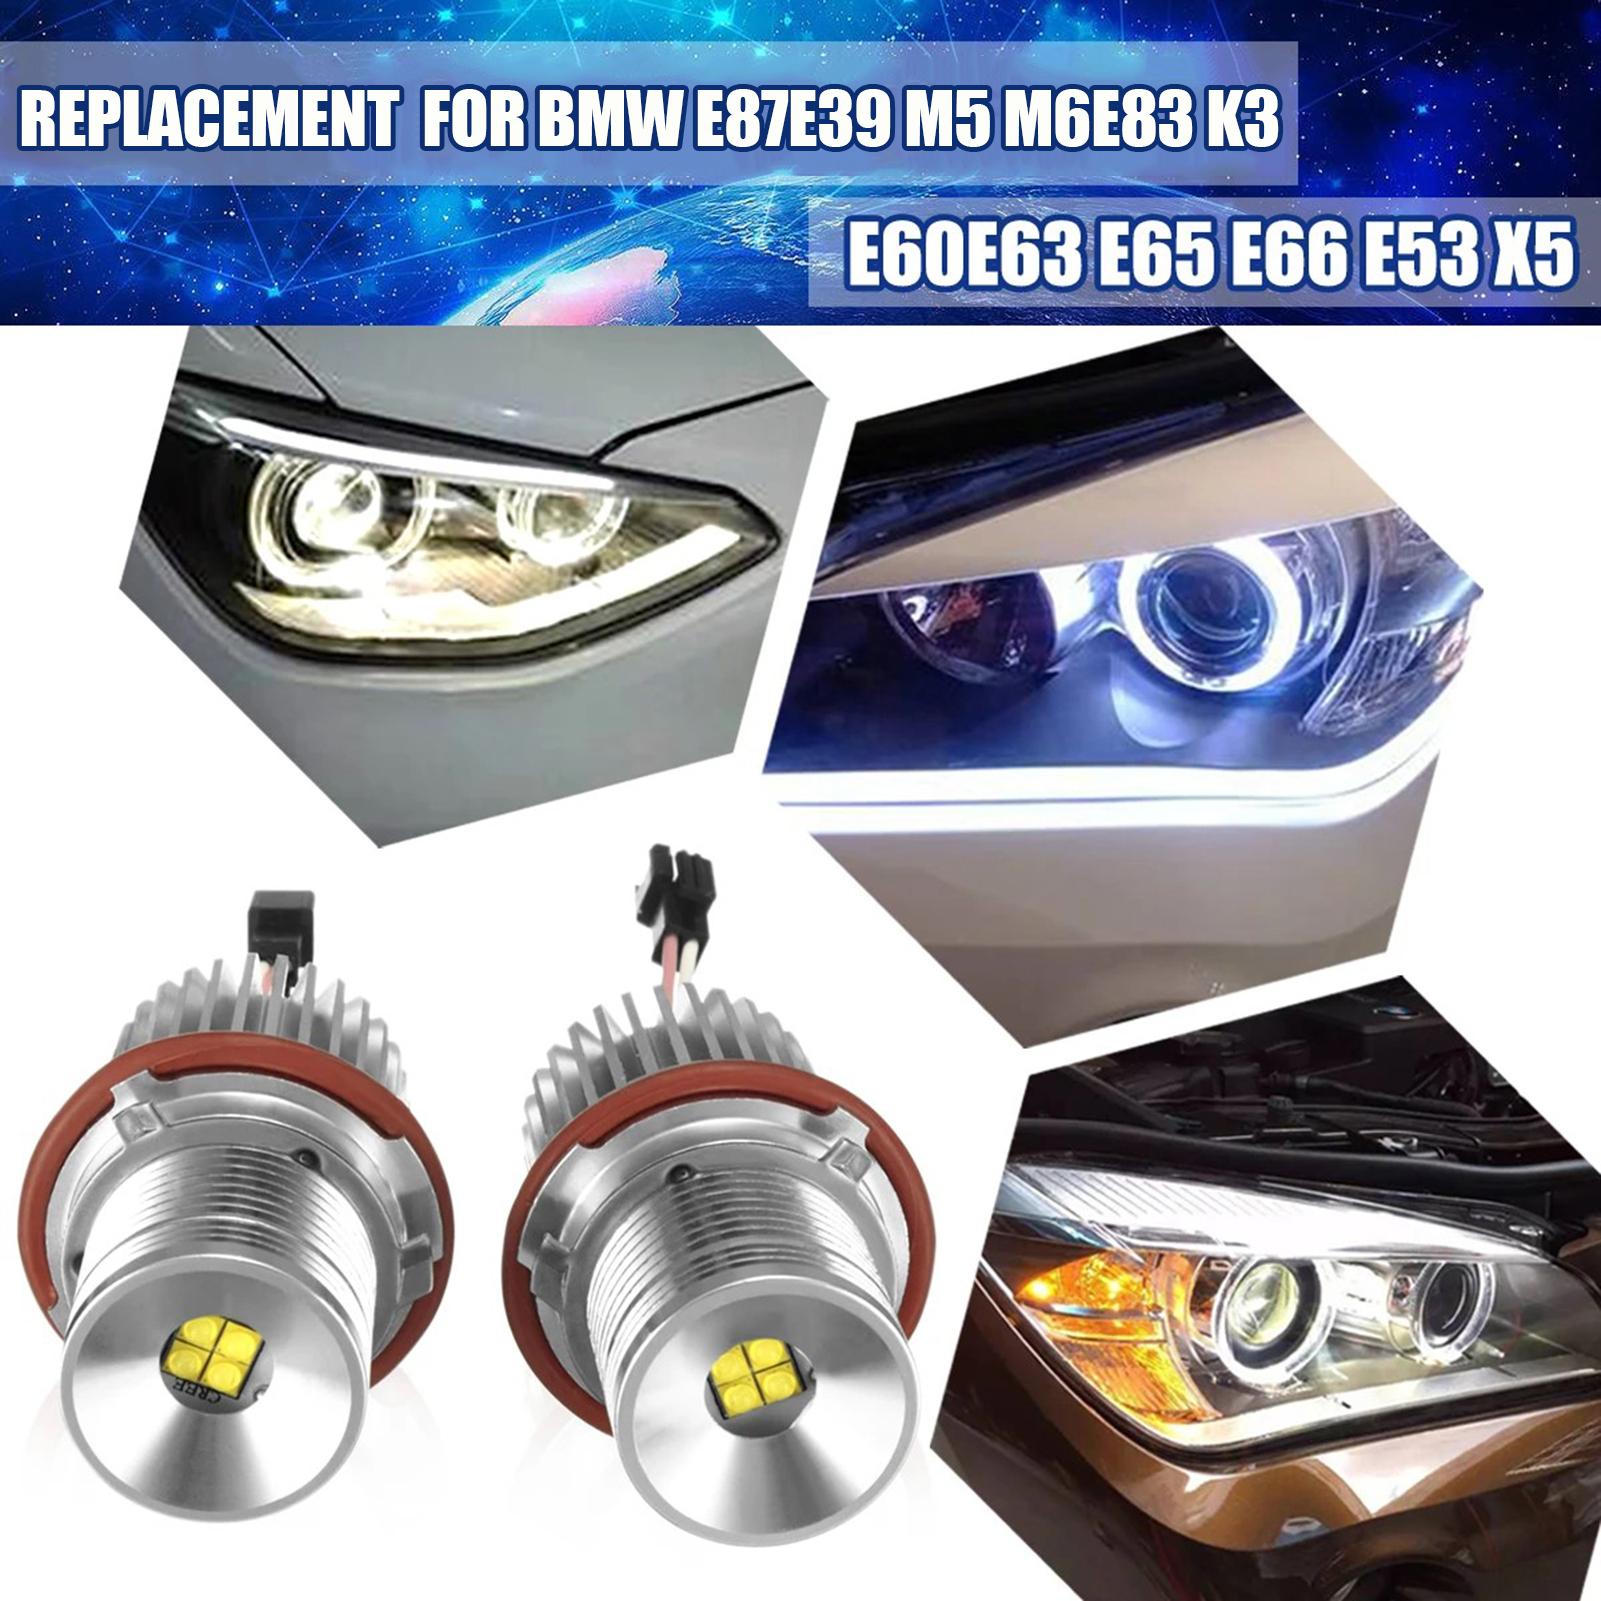 2Pcs 20W LED Angel Eyes Halo Ring Marker Light Bulb Replacement for BMW E87 E39 M5 M6 E83 X3 E60 E63 E65 E66 E53 X5